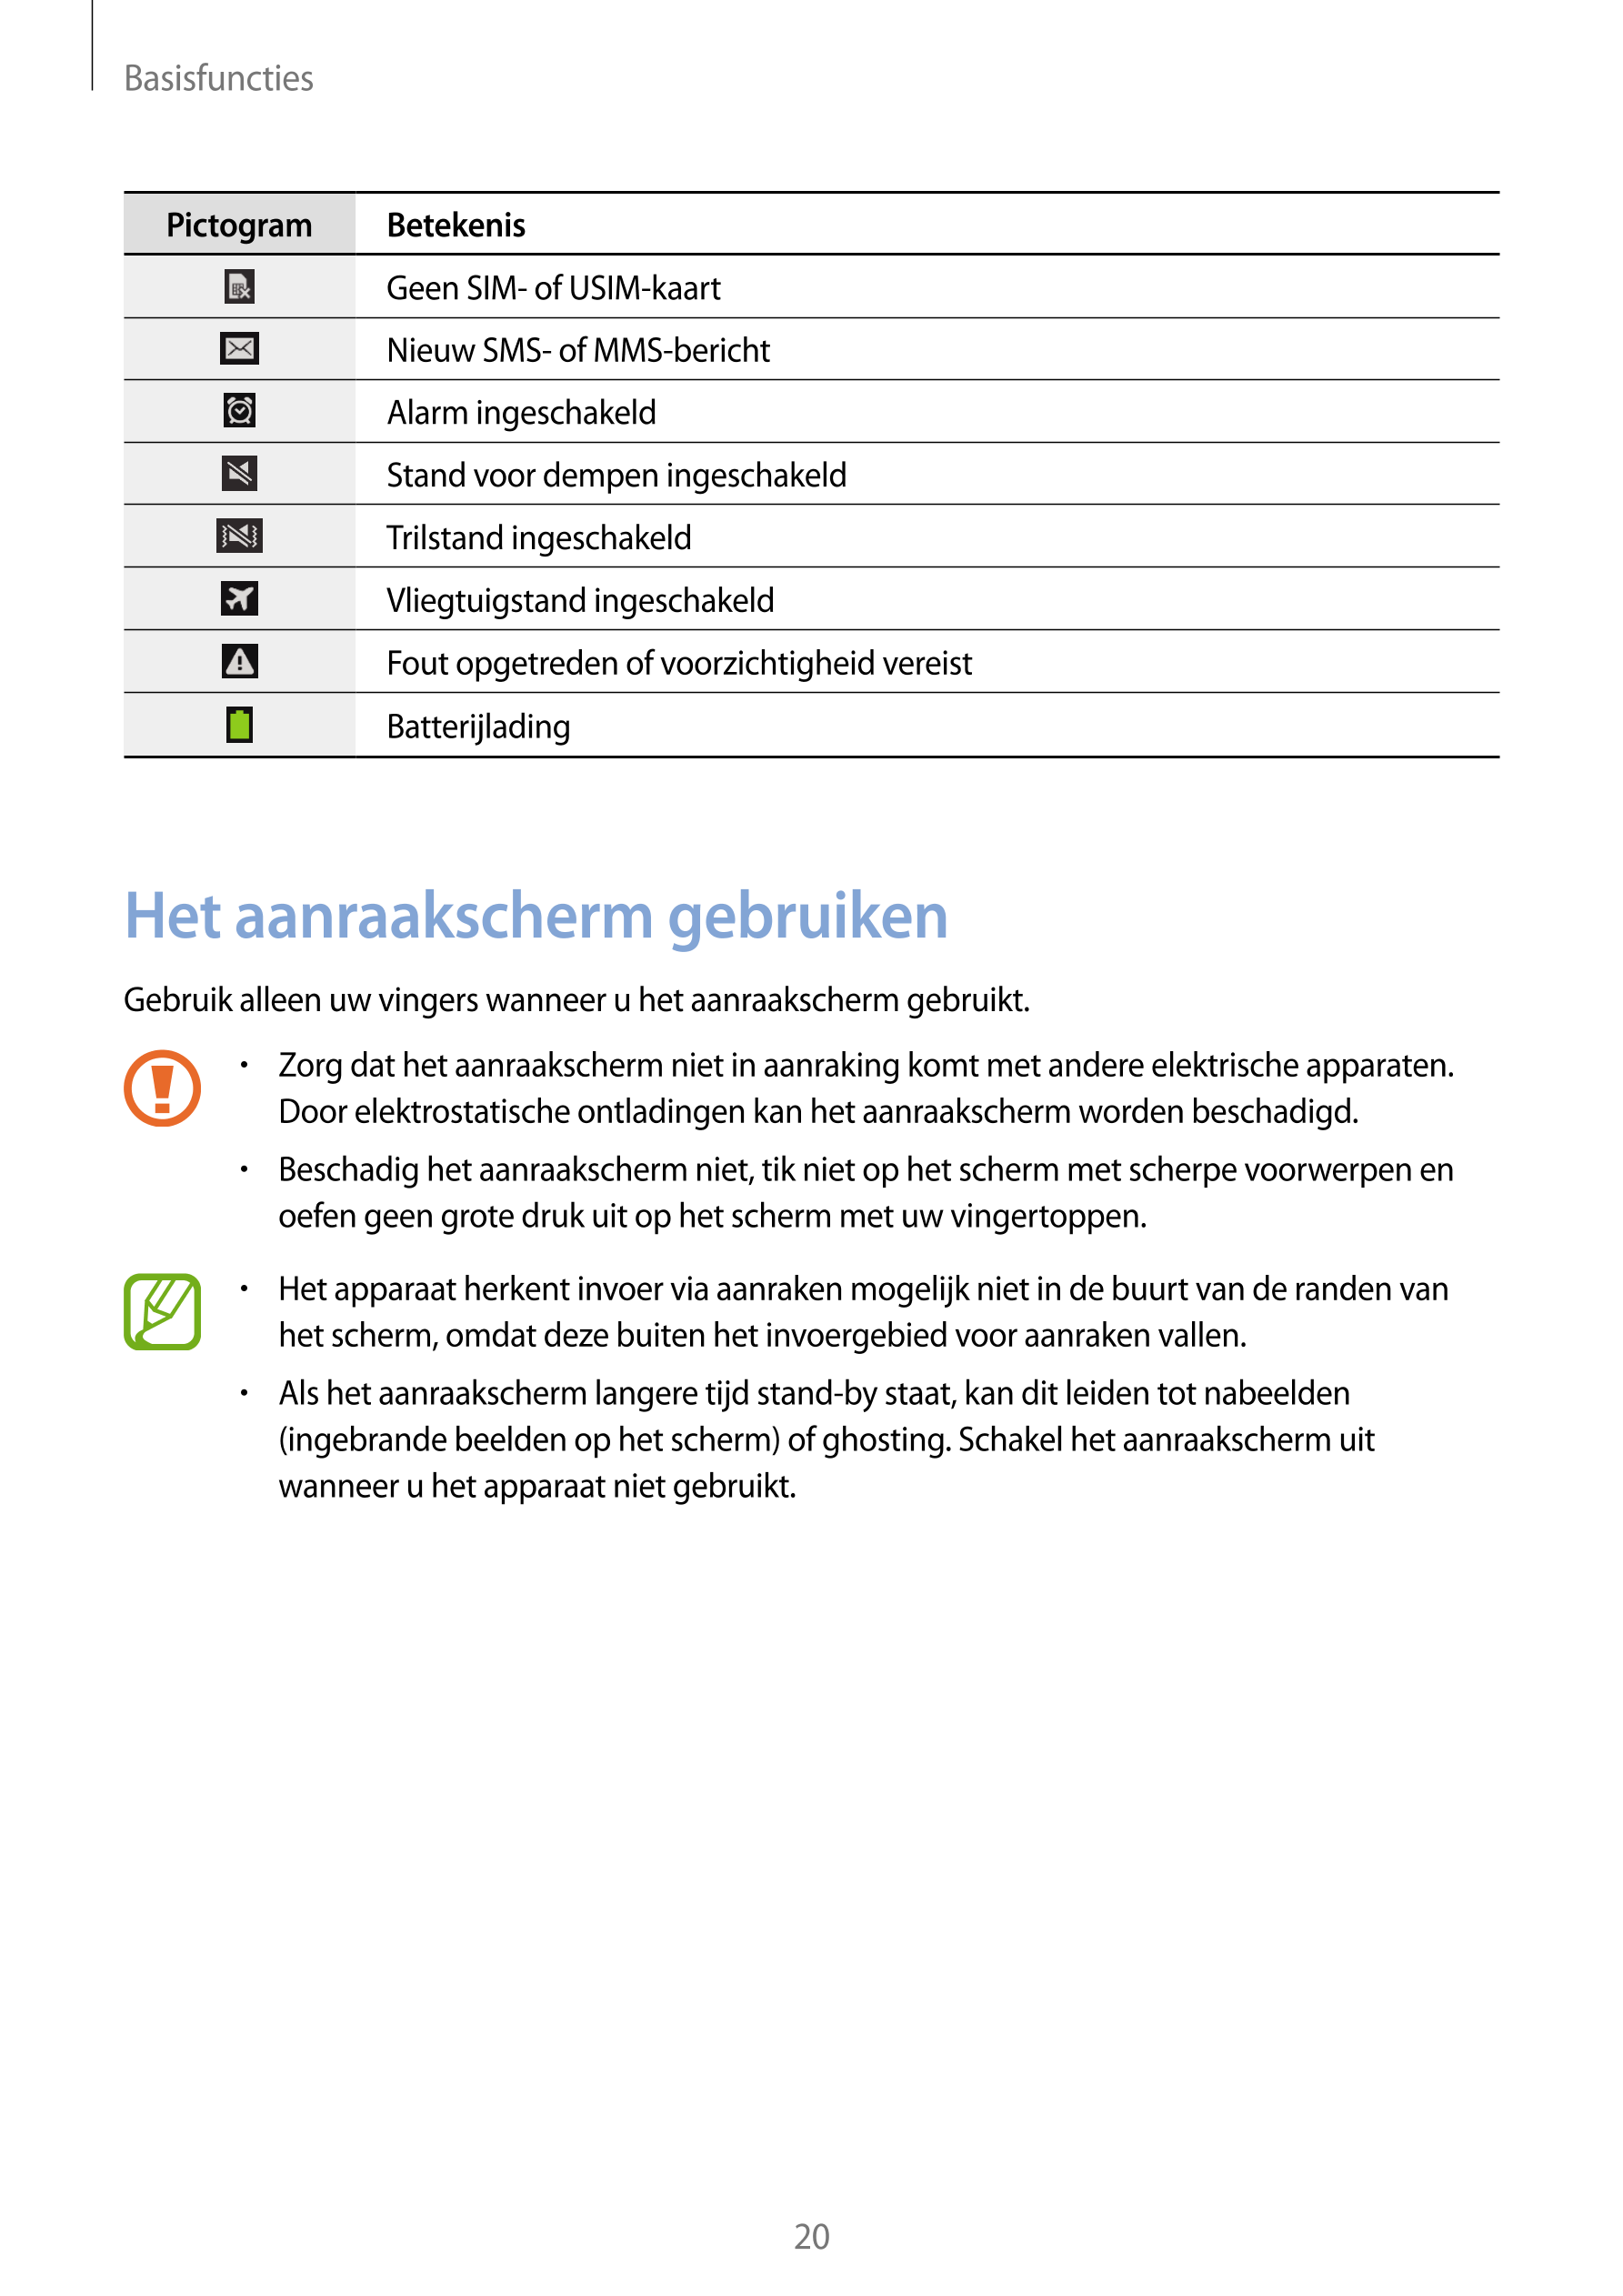 Basisfuncties
Pictogram        Betekenis
Geen SIM- of USIM-kaart
Nieuw SMS- of MMS-bericht
Alarm ingeschakeld
Stand voor dempen 